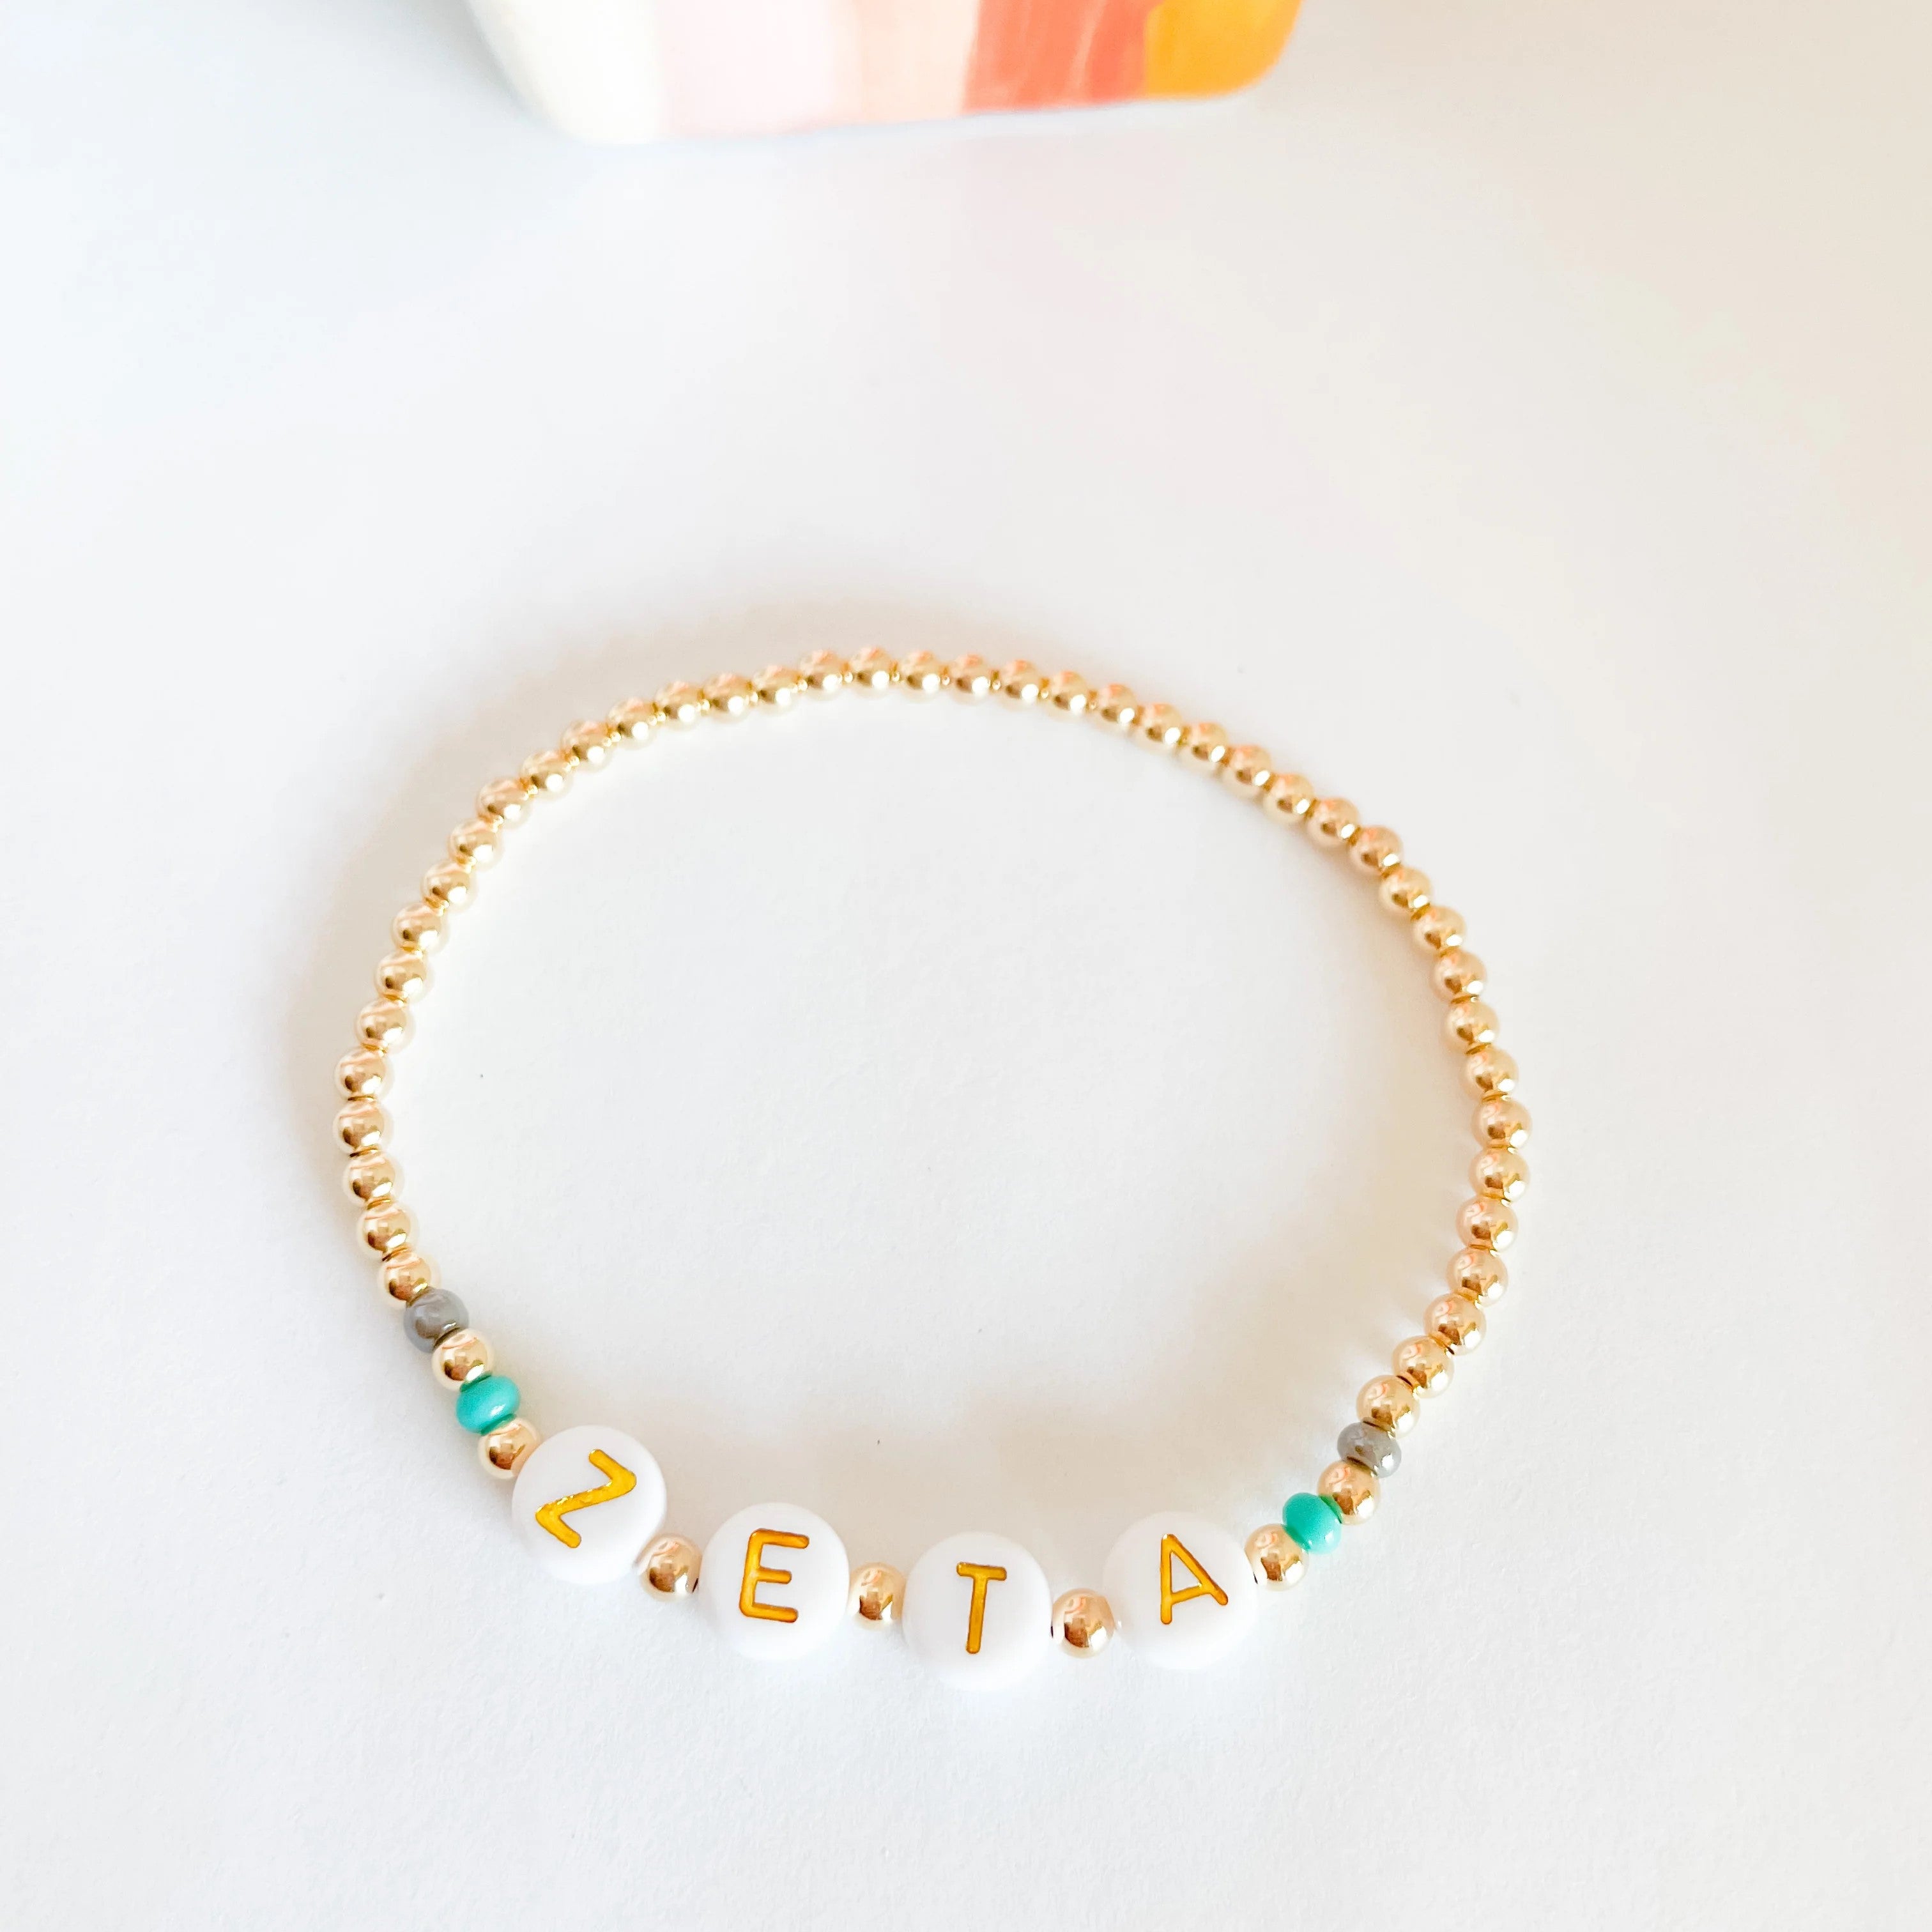 Beaded Blondes | Zeta Color Sorority Bracelet - Giddy Up Glamour Boutique